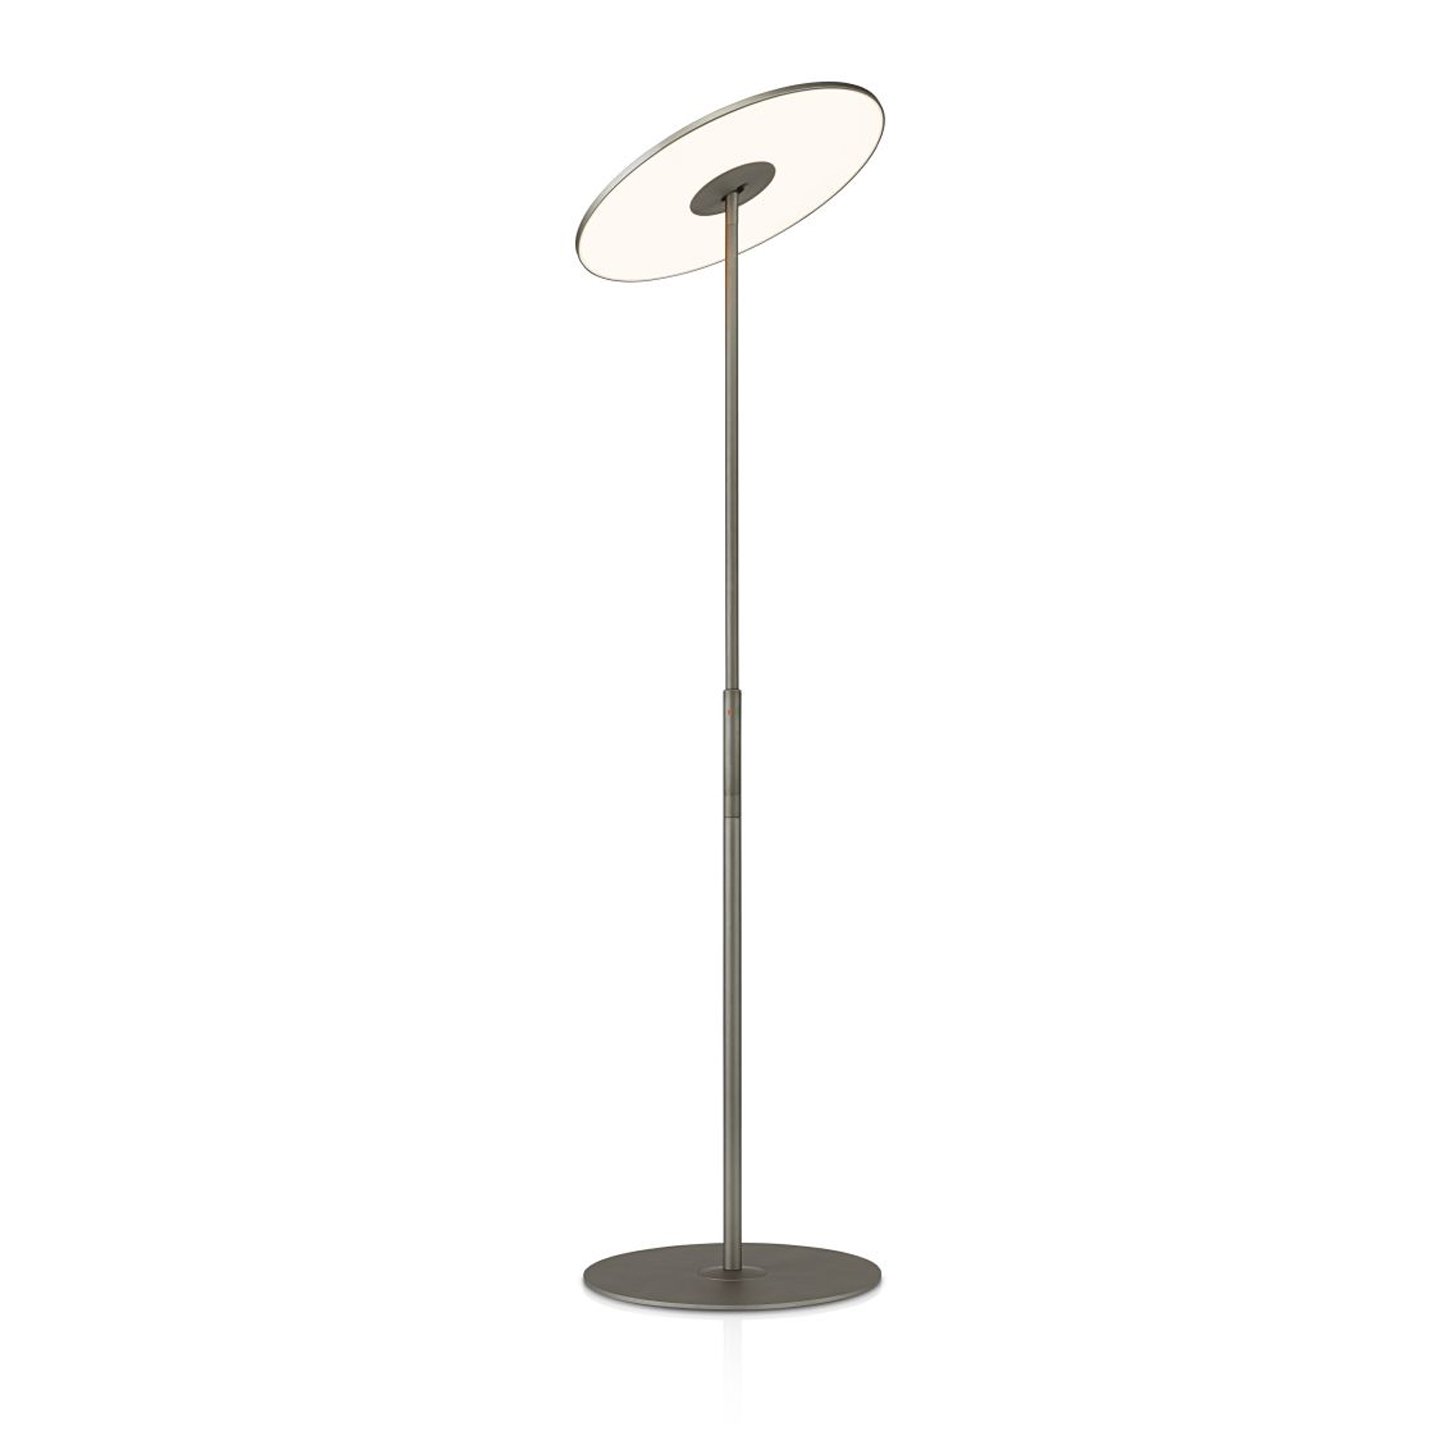 Haworth Circa Lighting Lamp tall with circular base in grey